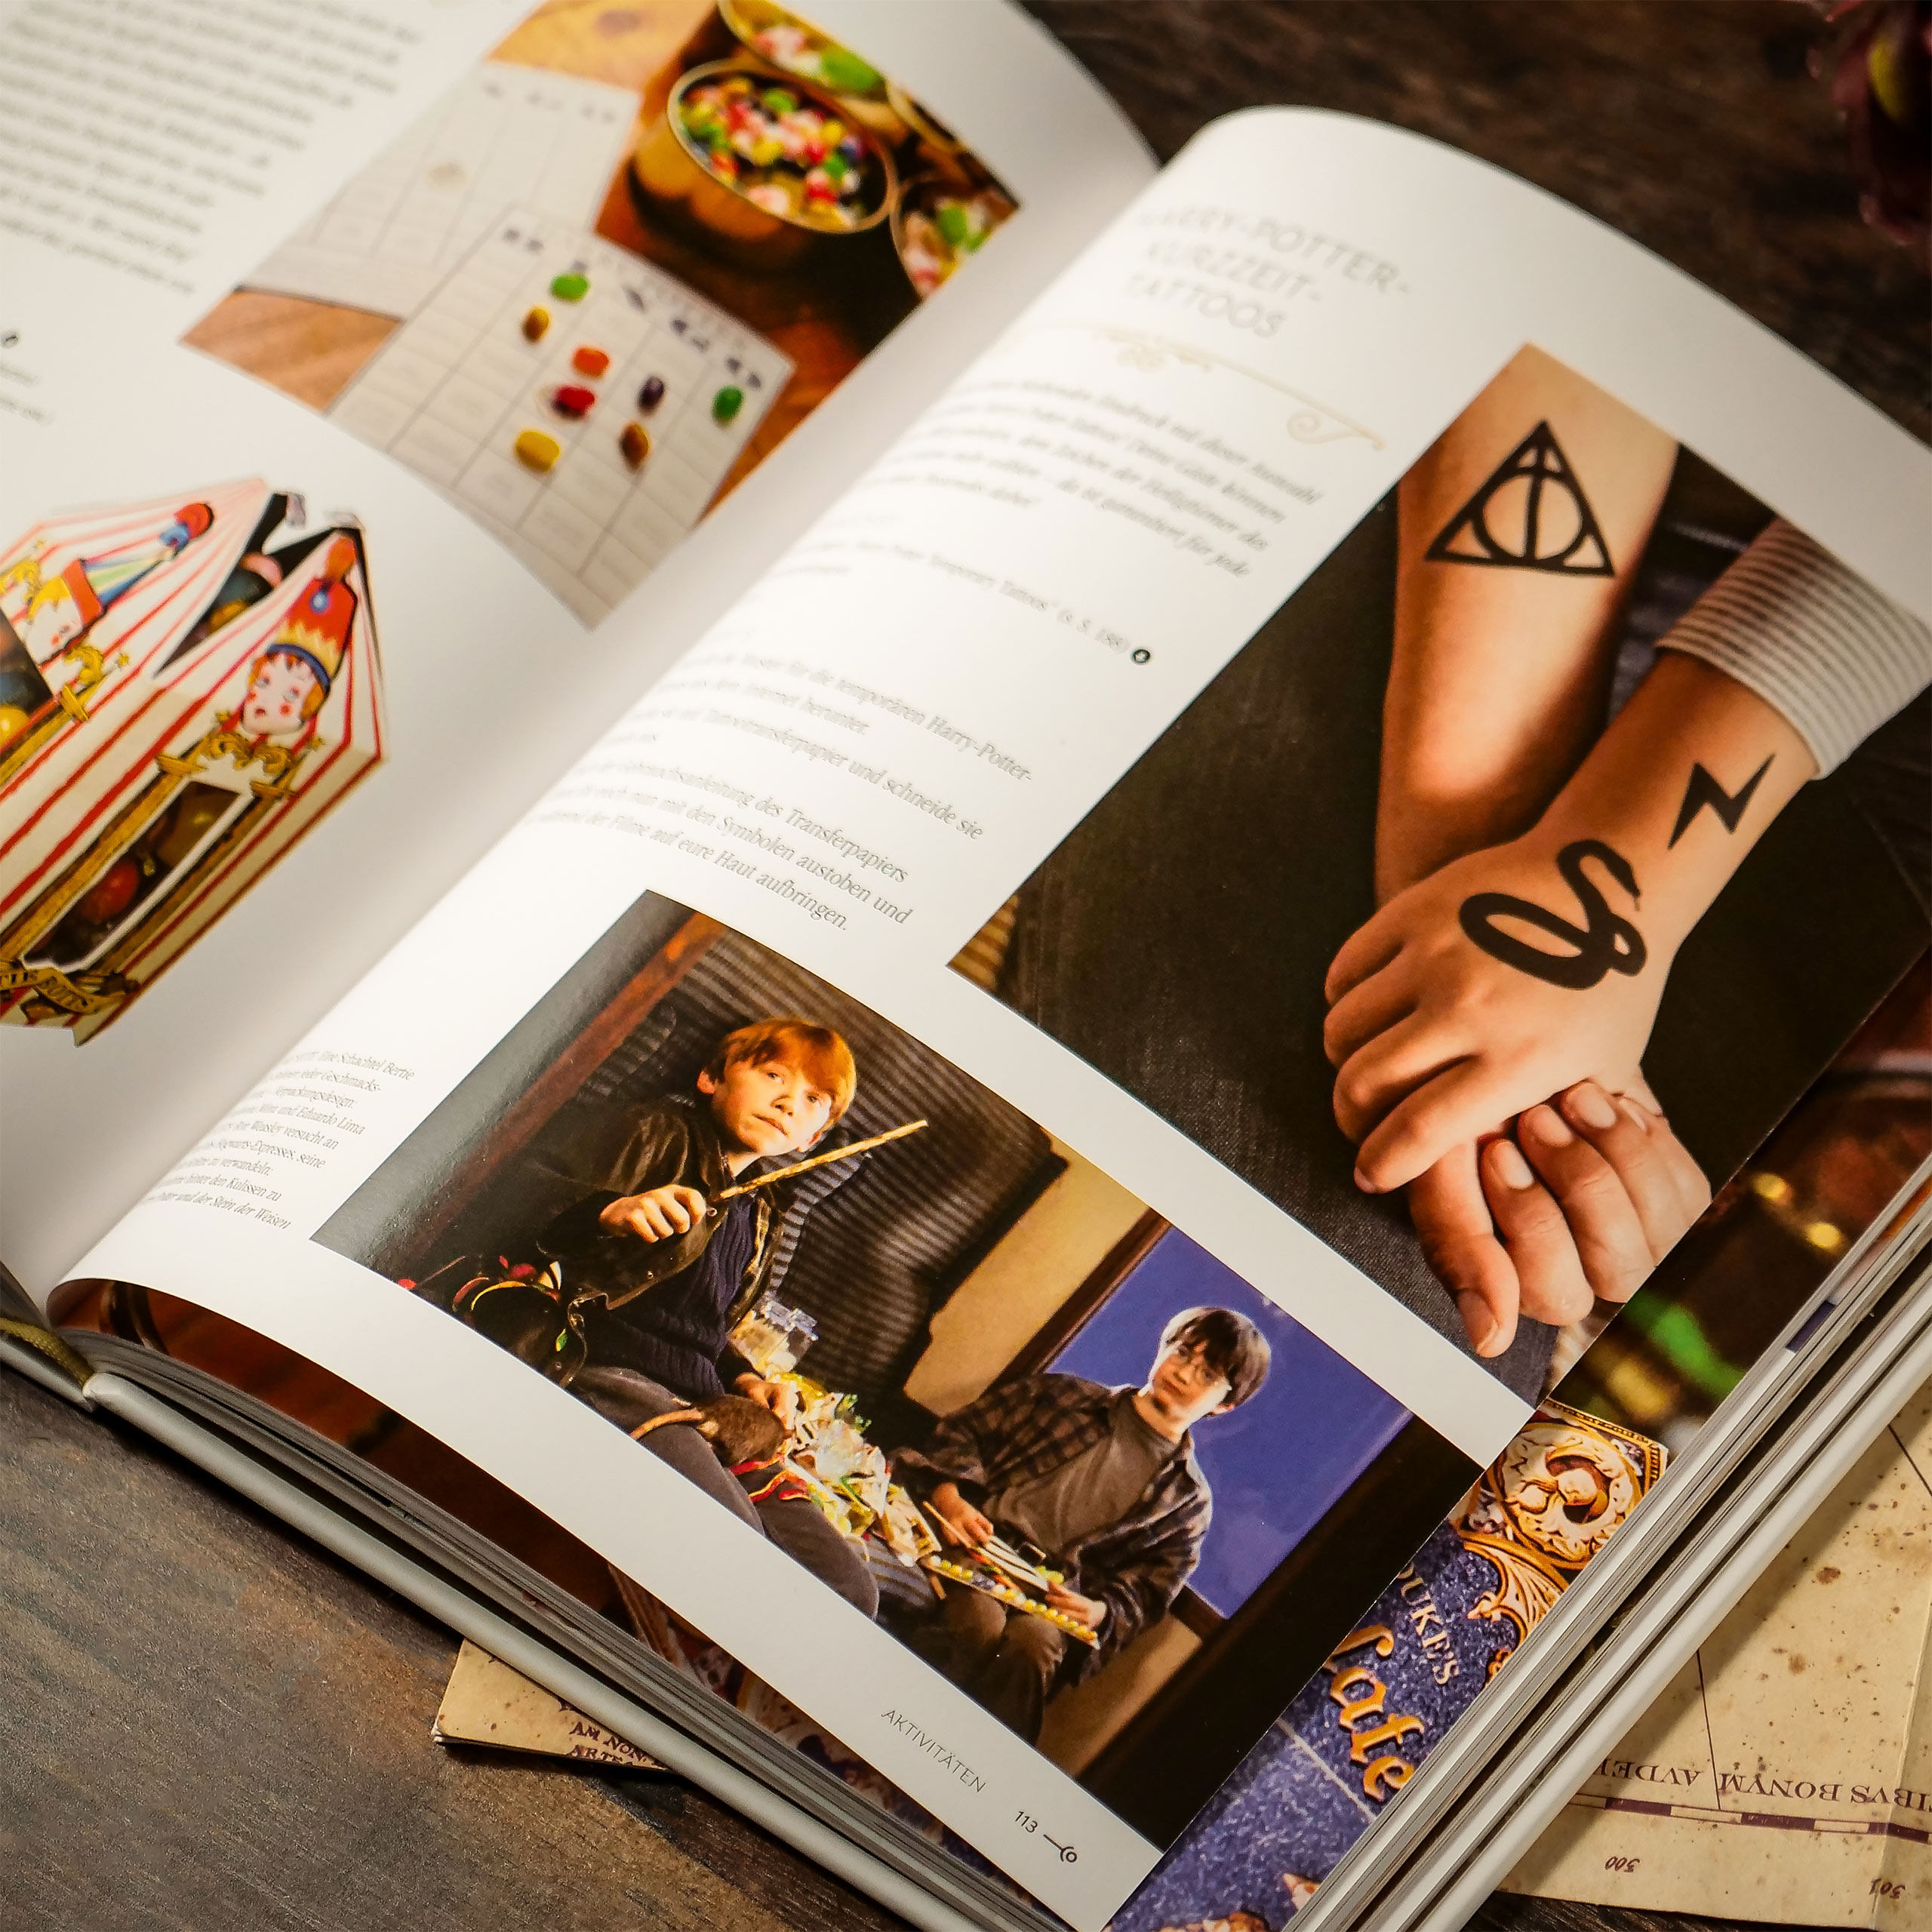 Harry Potter - Das offizielle Koch- und Backbuch